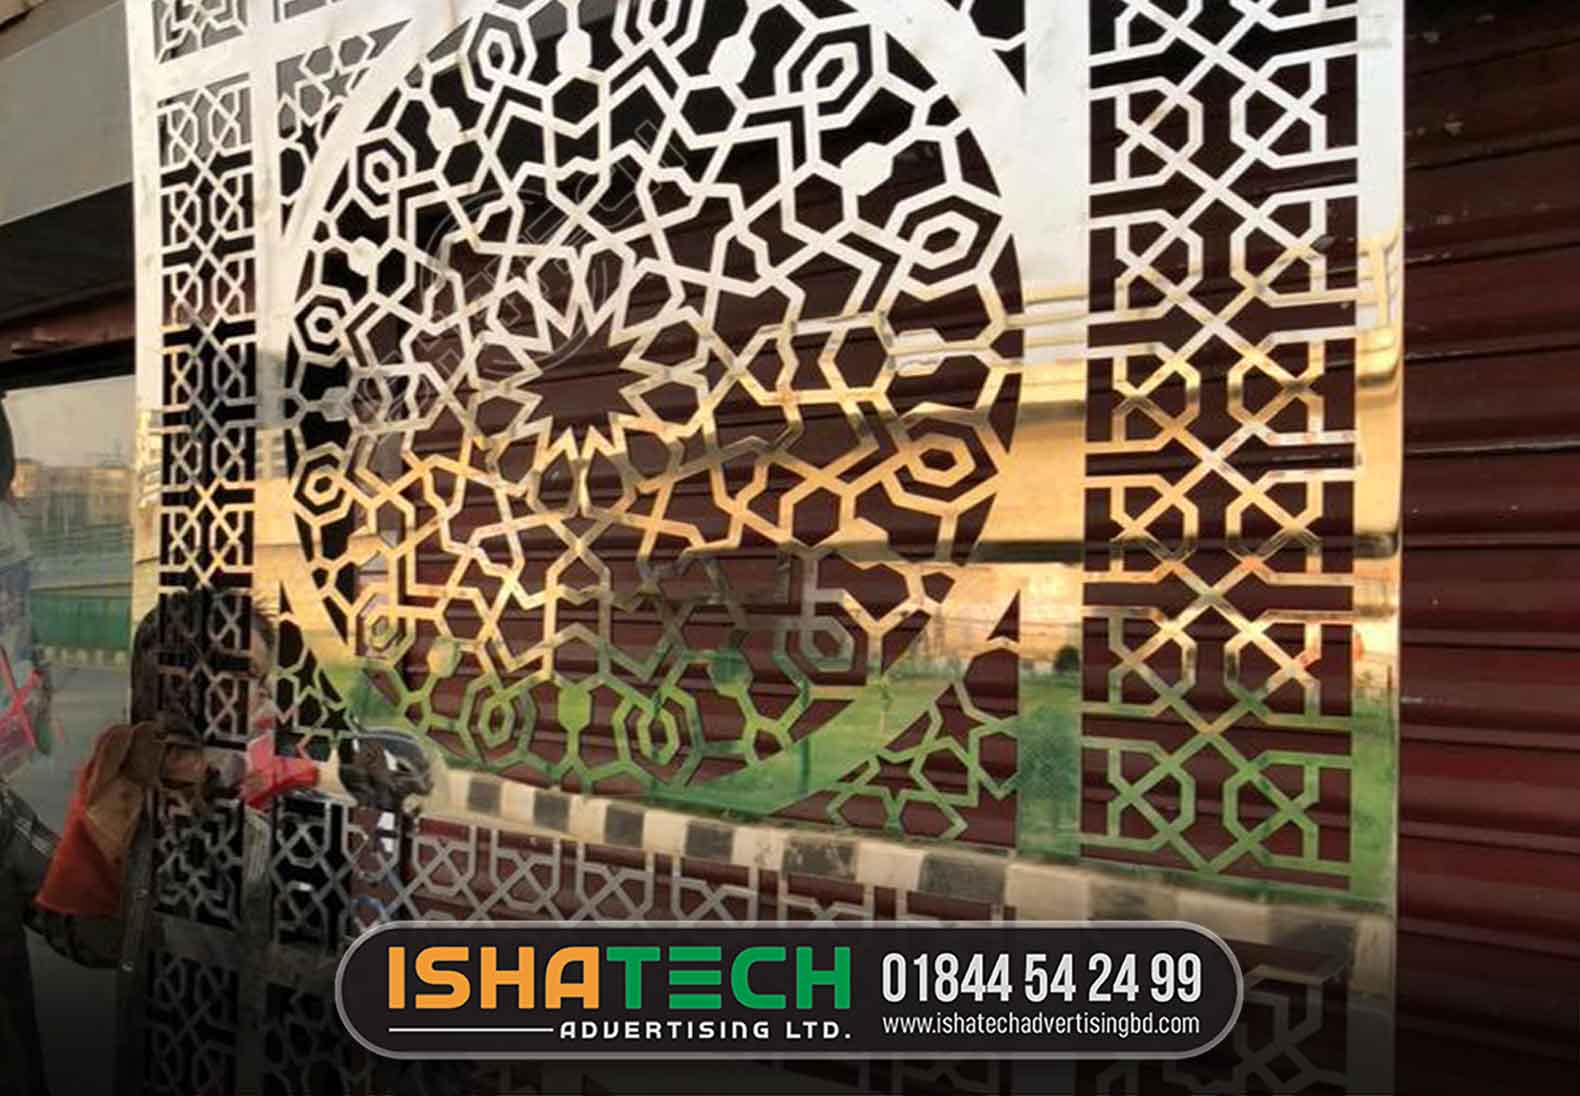 Stainless steel laser cutting panel design Dhaka, Bangladesh